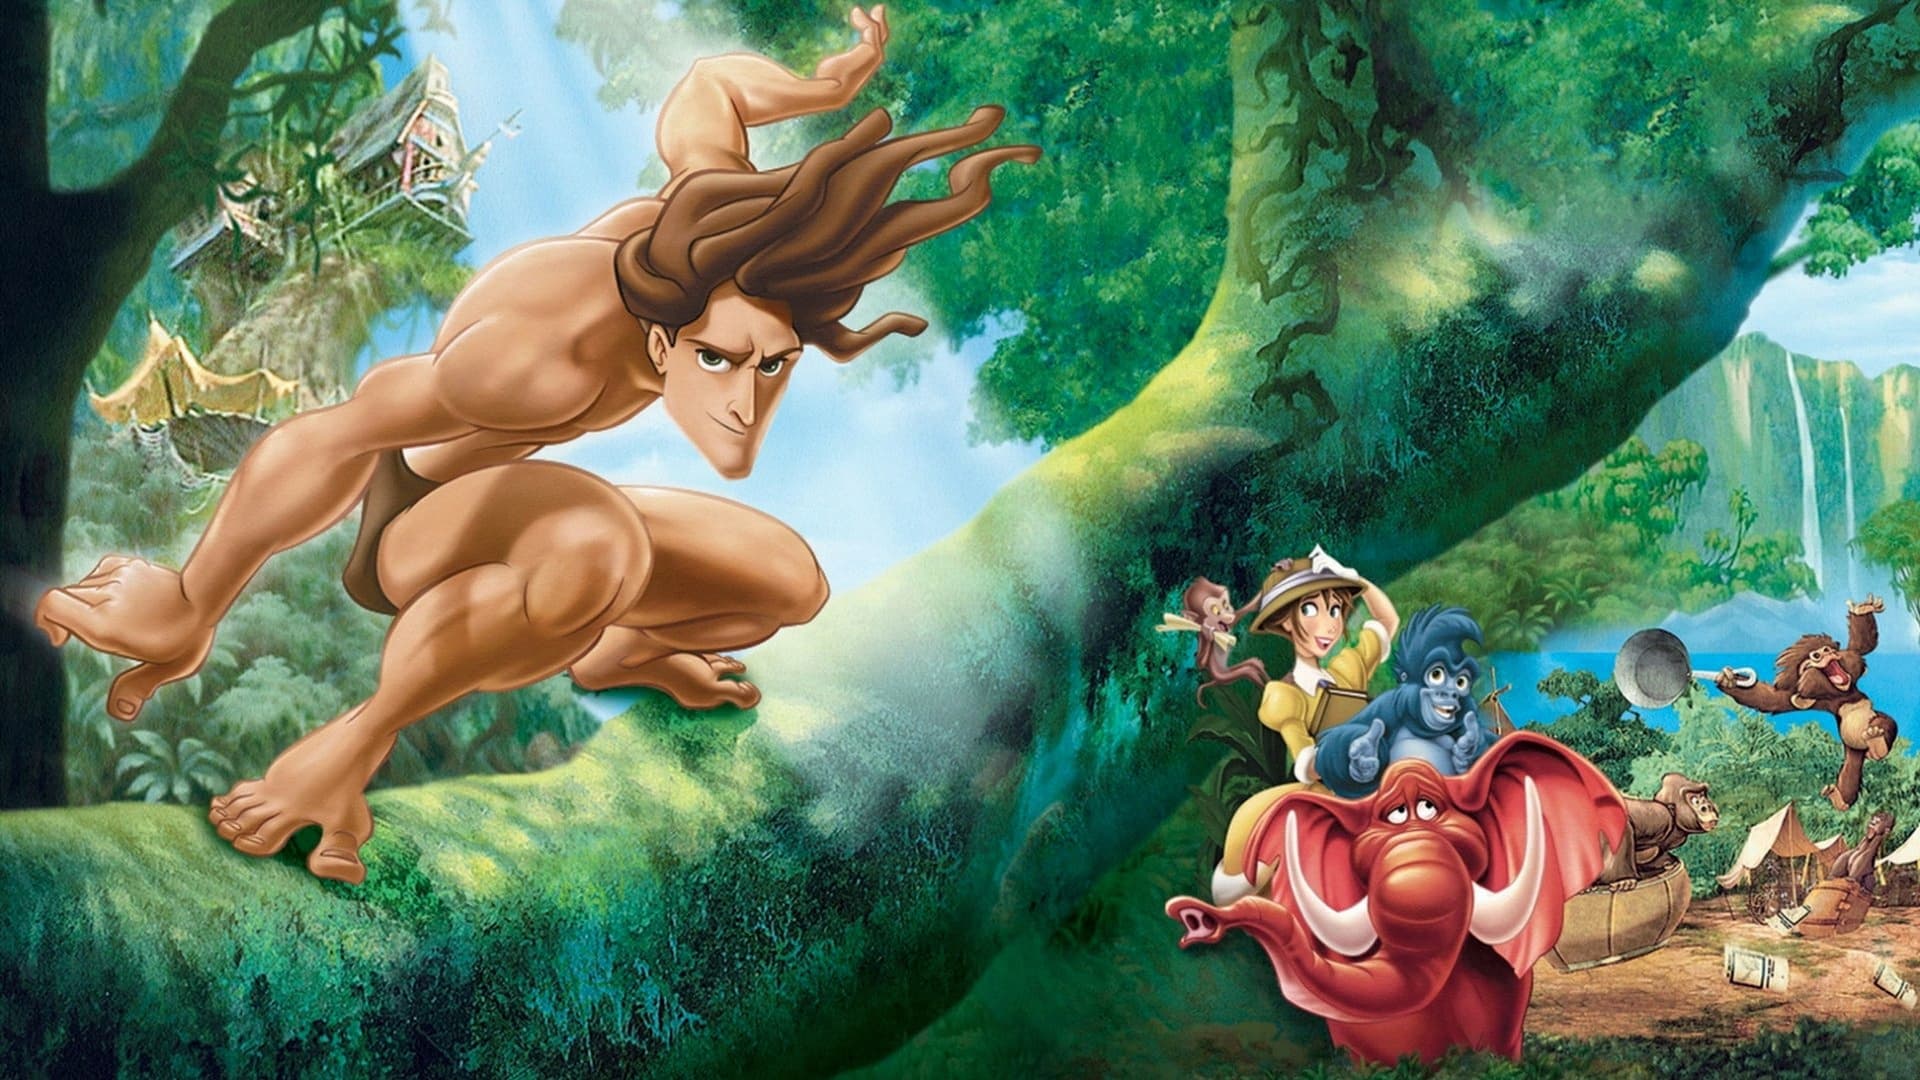 La recensione di Tarzan, film d’animazione della Disney distribuito al cinema nel 1999